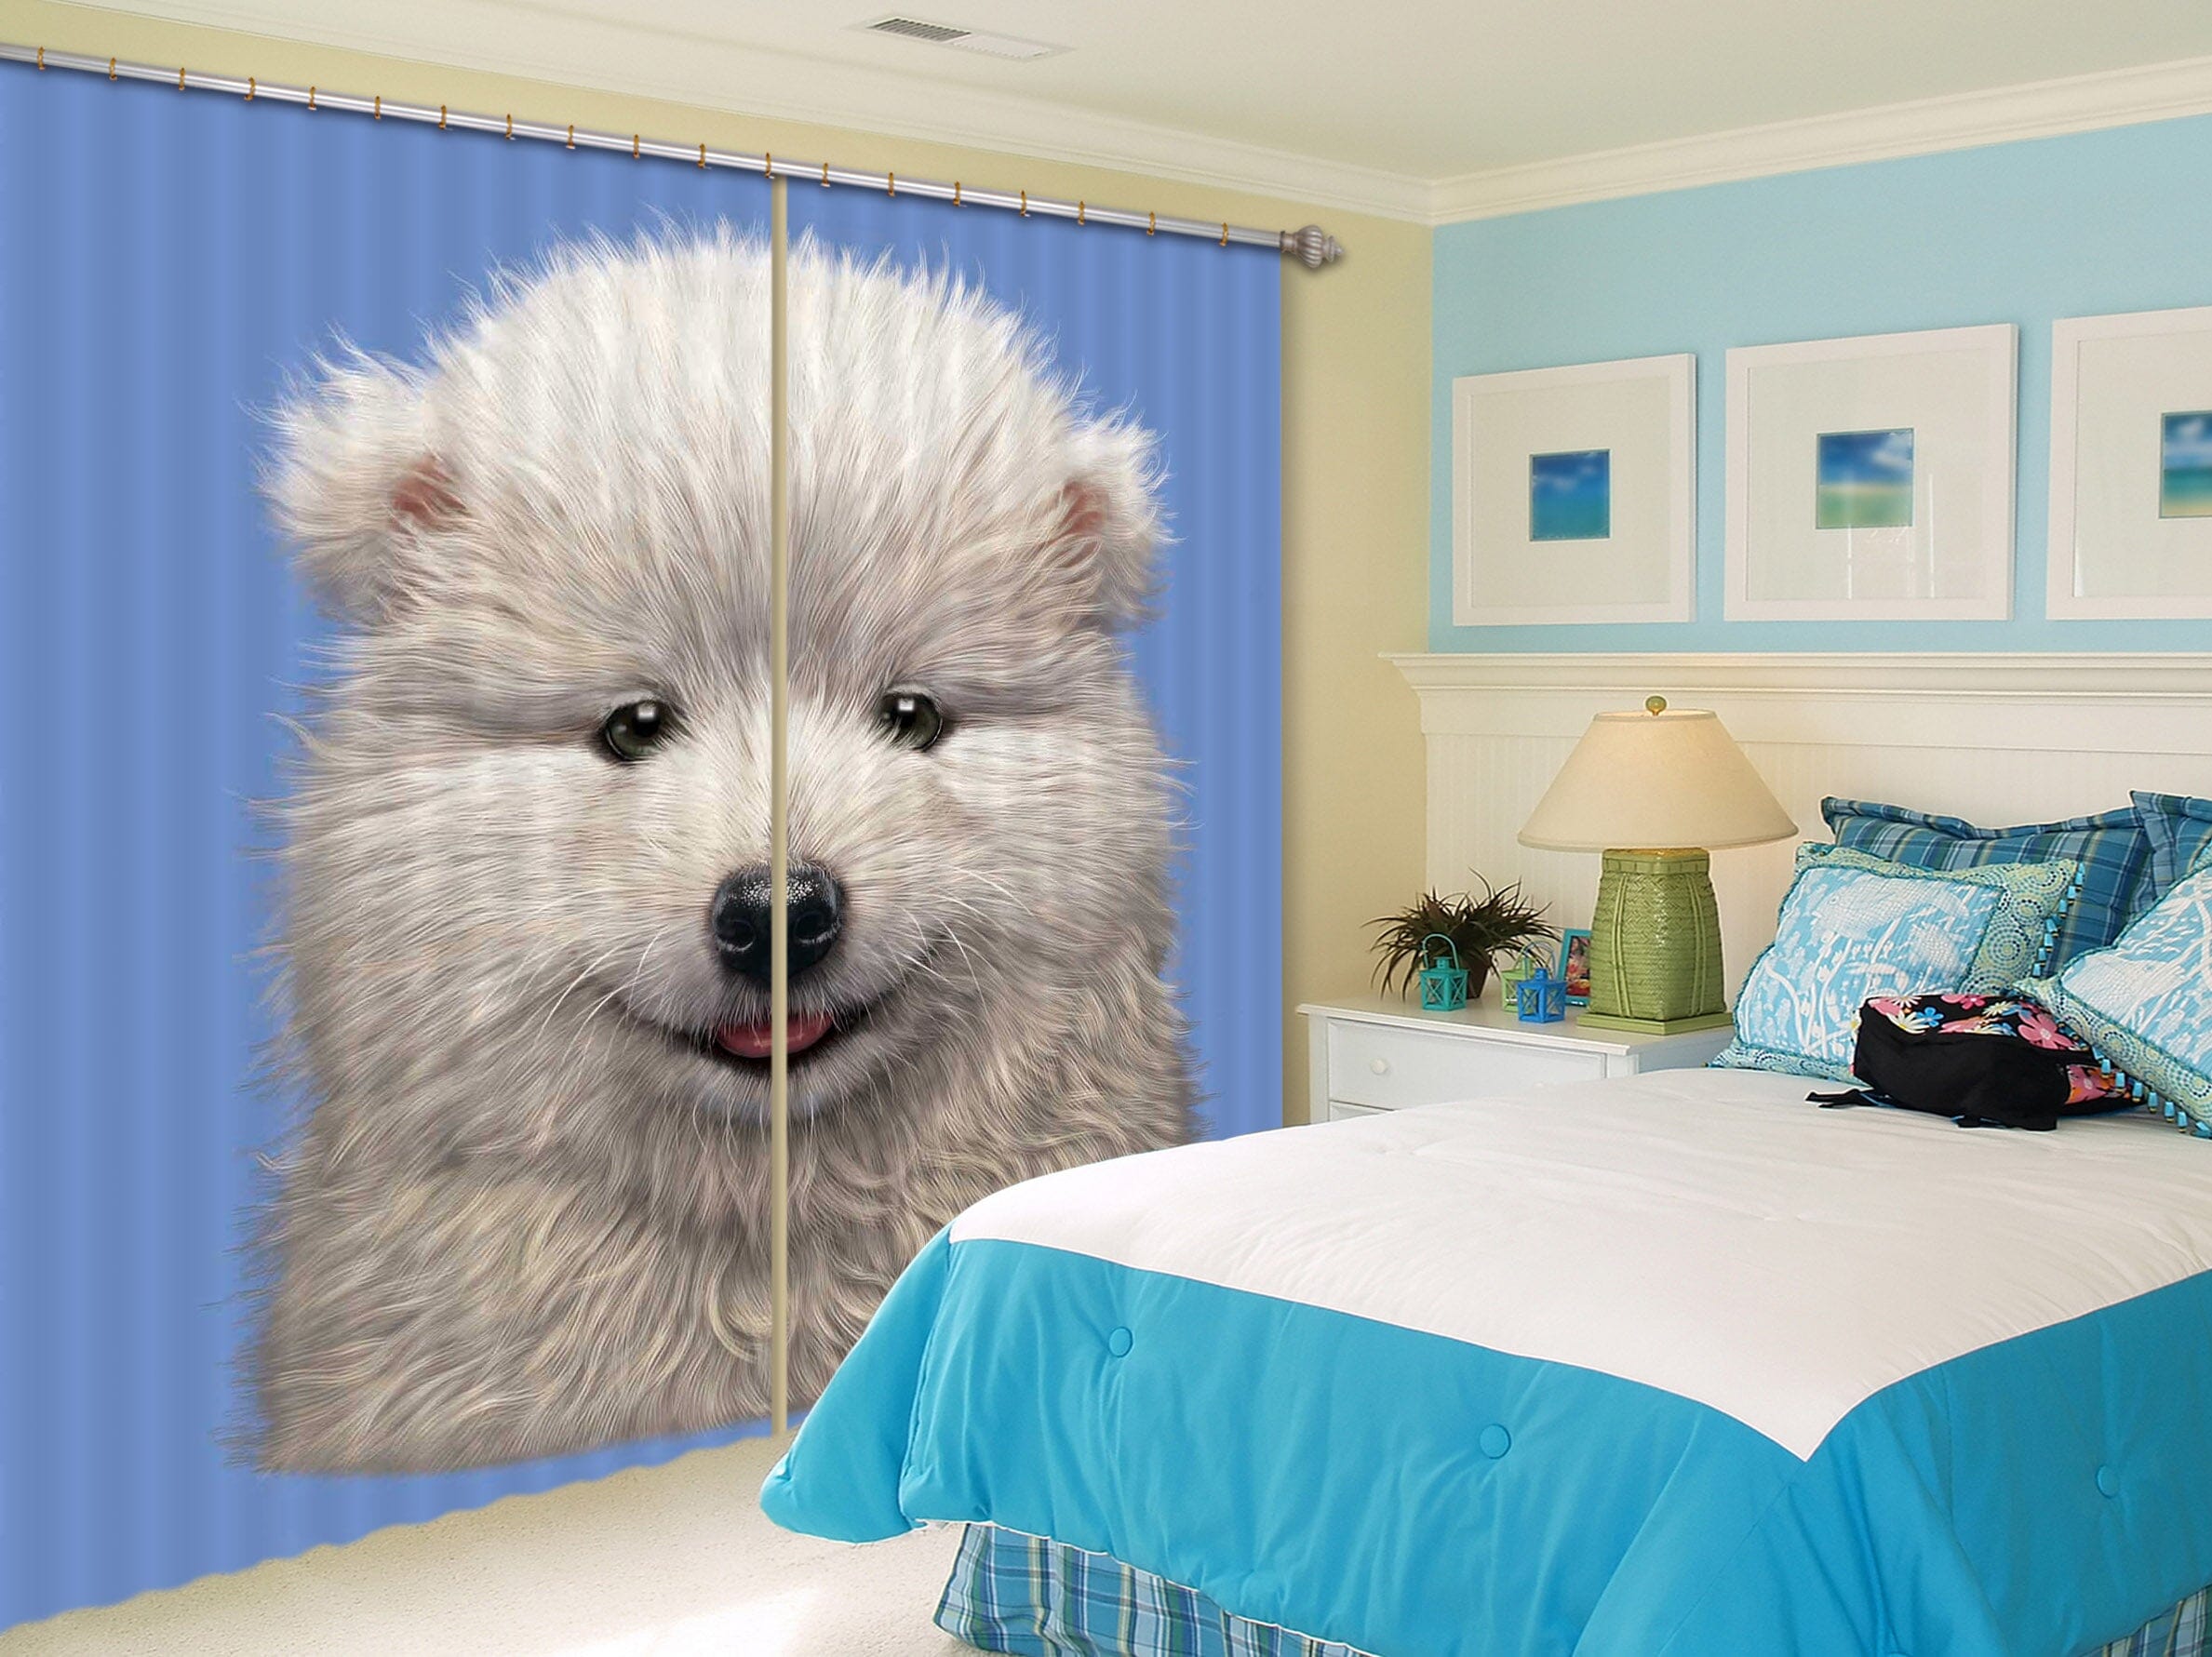 3D Cute Dog 066 Vincent Hie Curtain Curtains Drapes Curtains AJ Creativity Home 